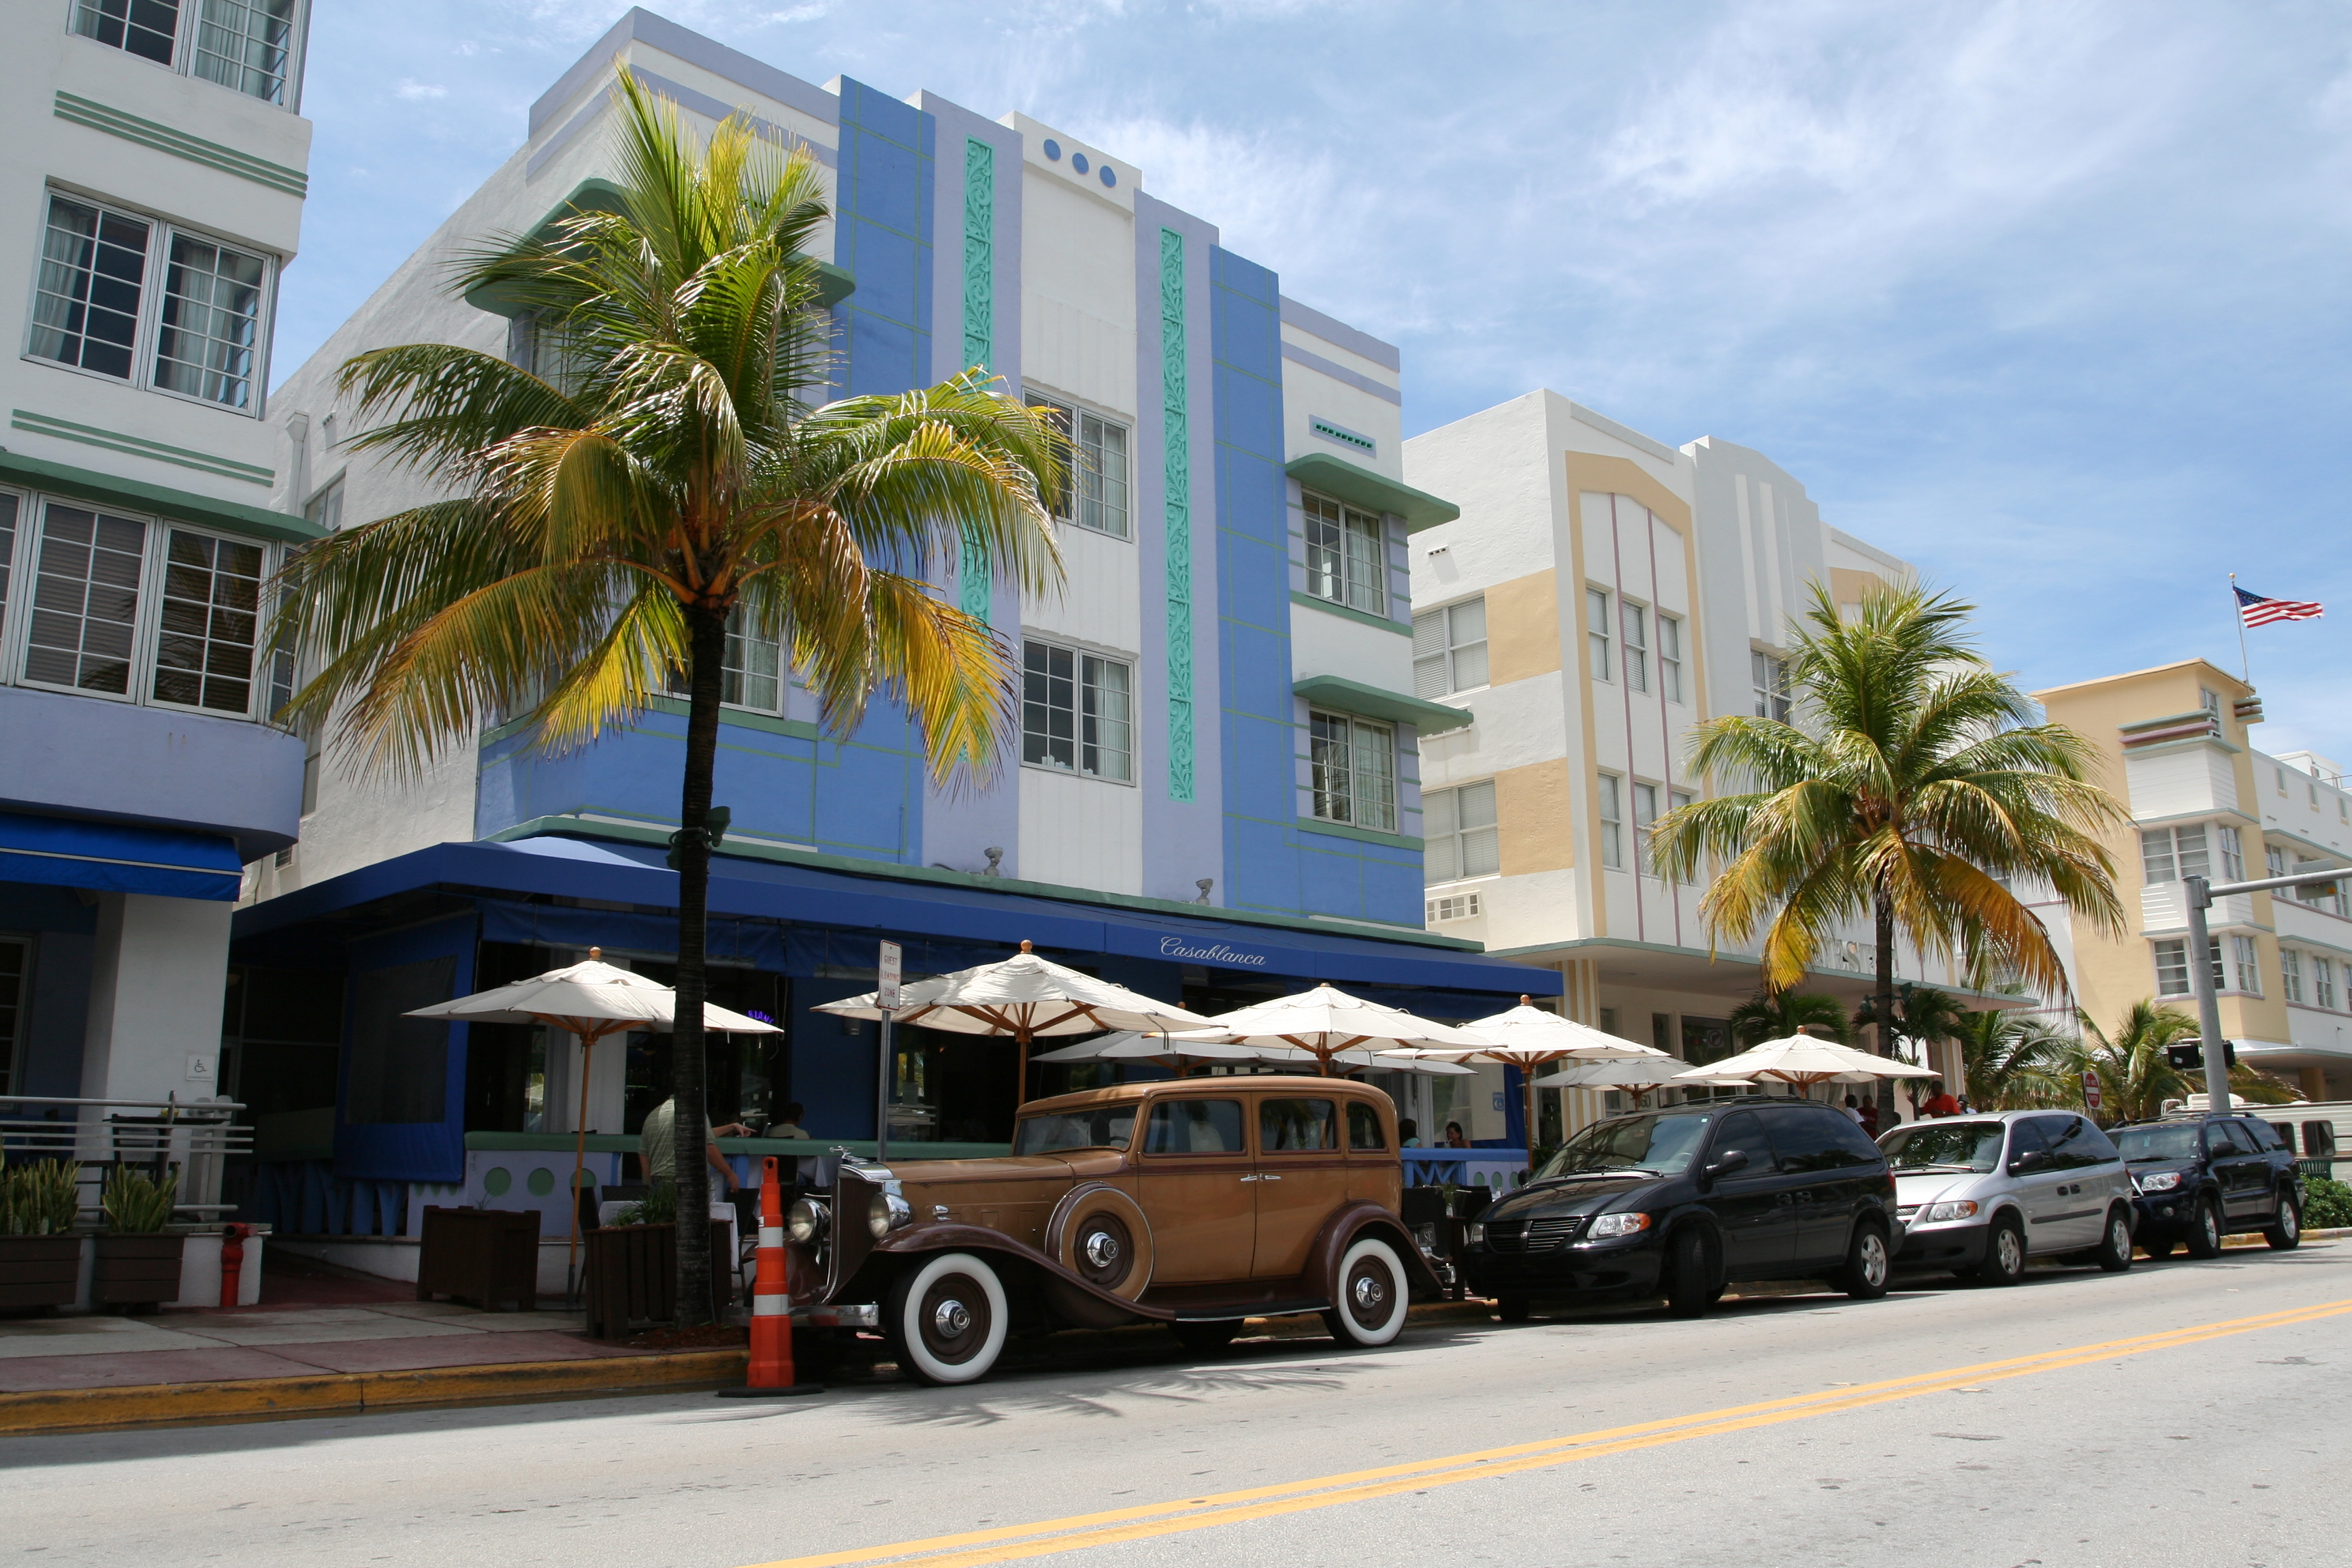 Miami Beach Architectural District - Wikipedia